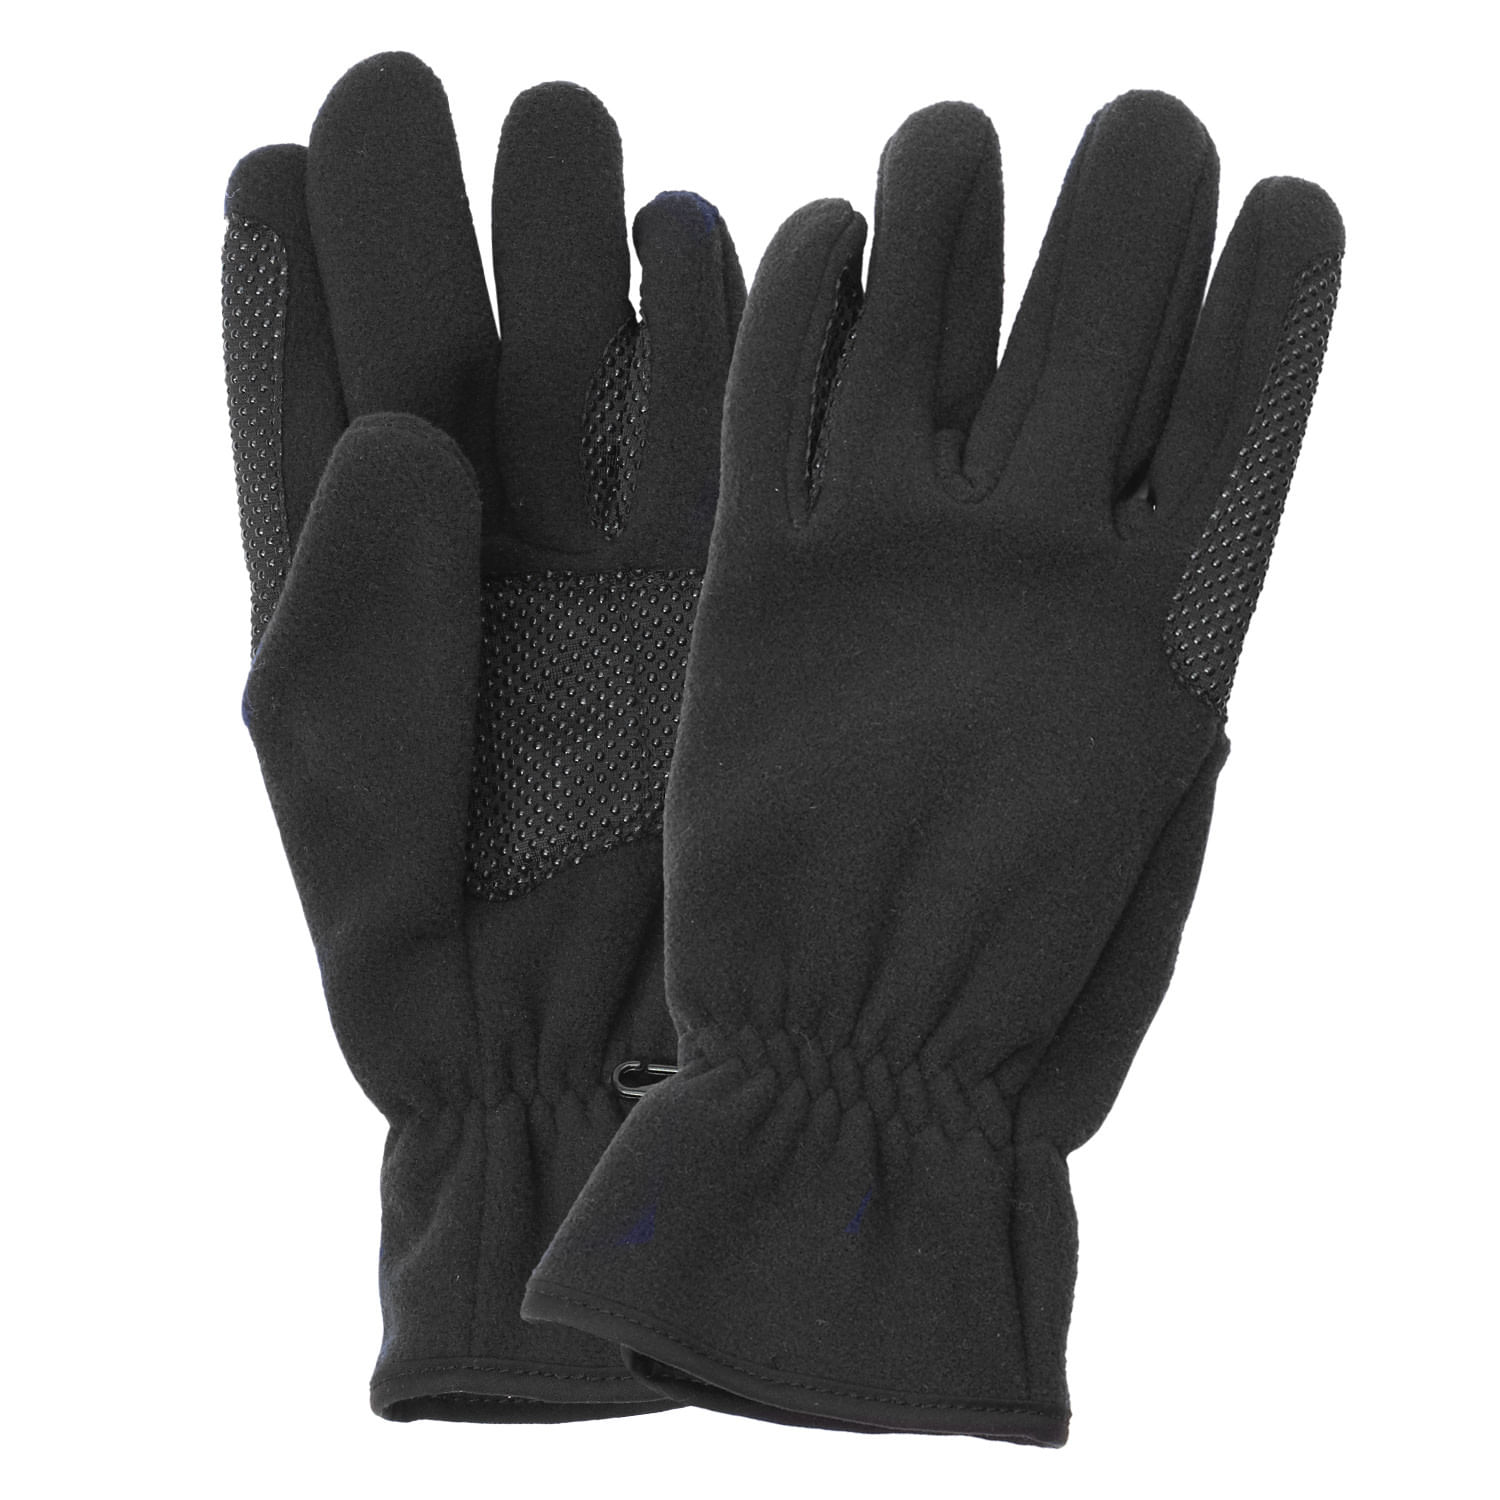 Equistar EquiStar Cozy Fleece Glove - Black - Equistar-464265-Black ...